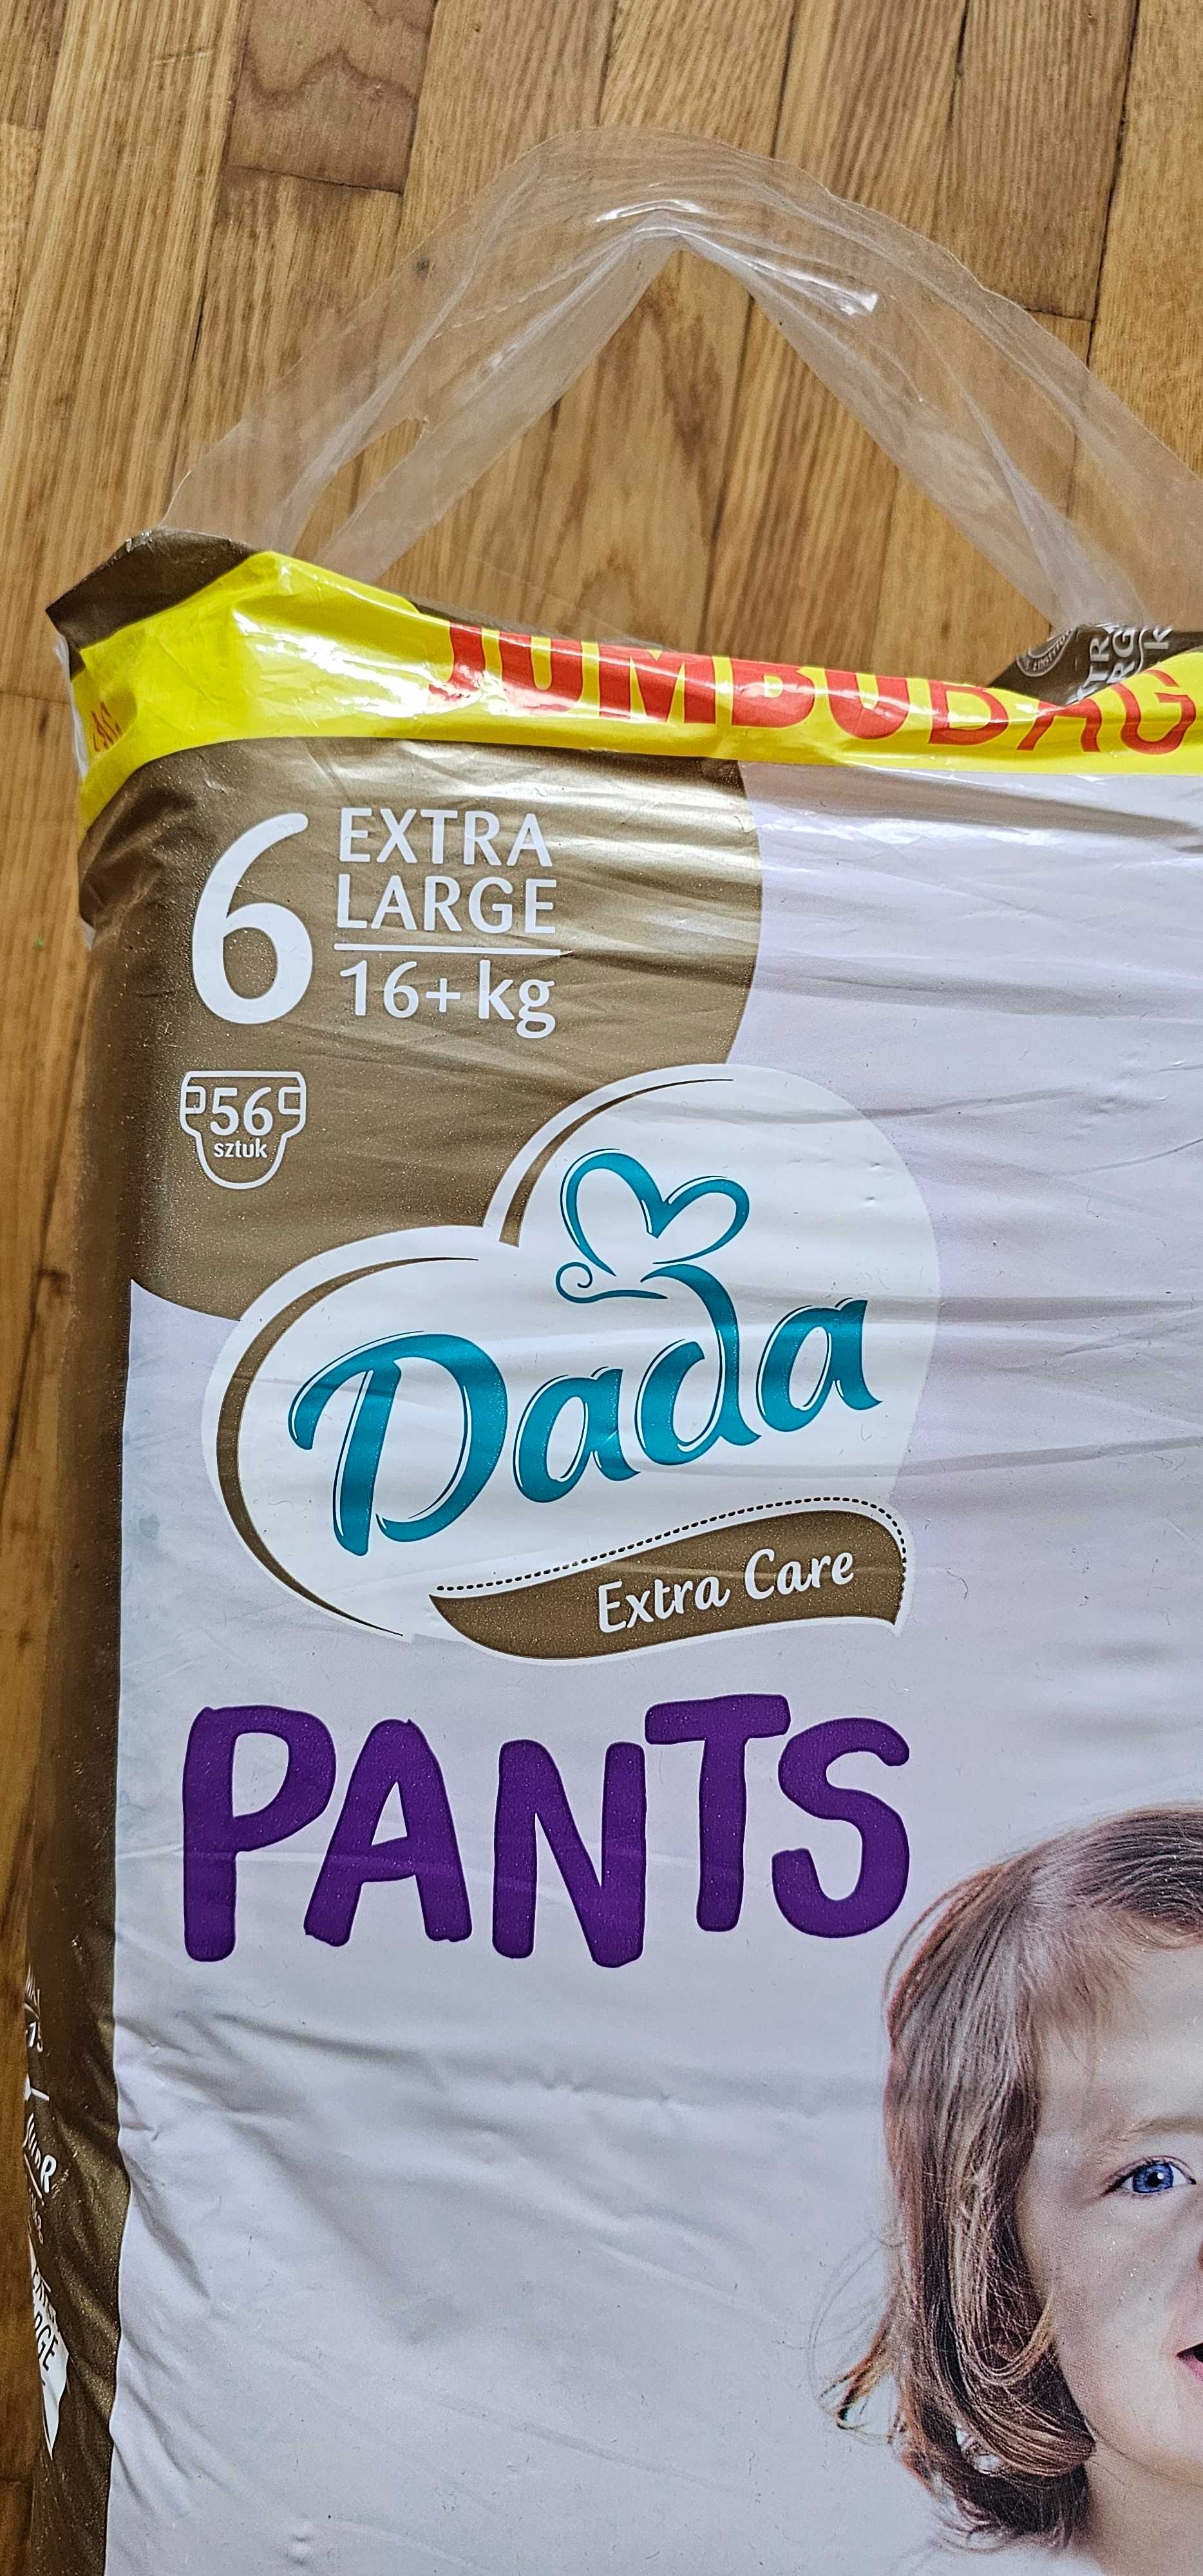 Трусики Dada Extra Care 6 Pants Jumbo Bag 56 шт.